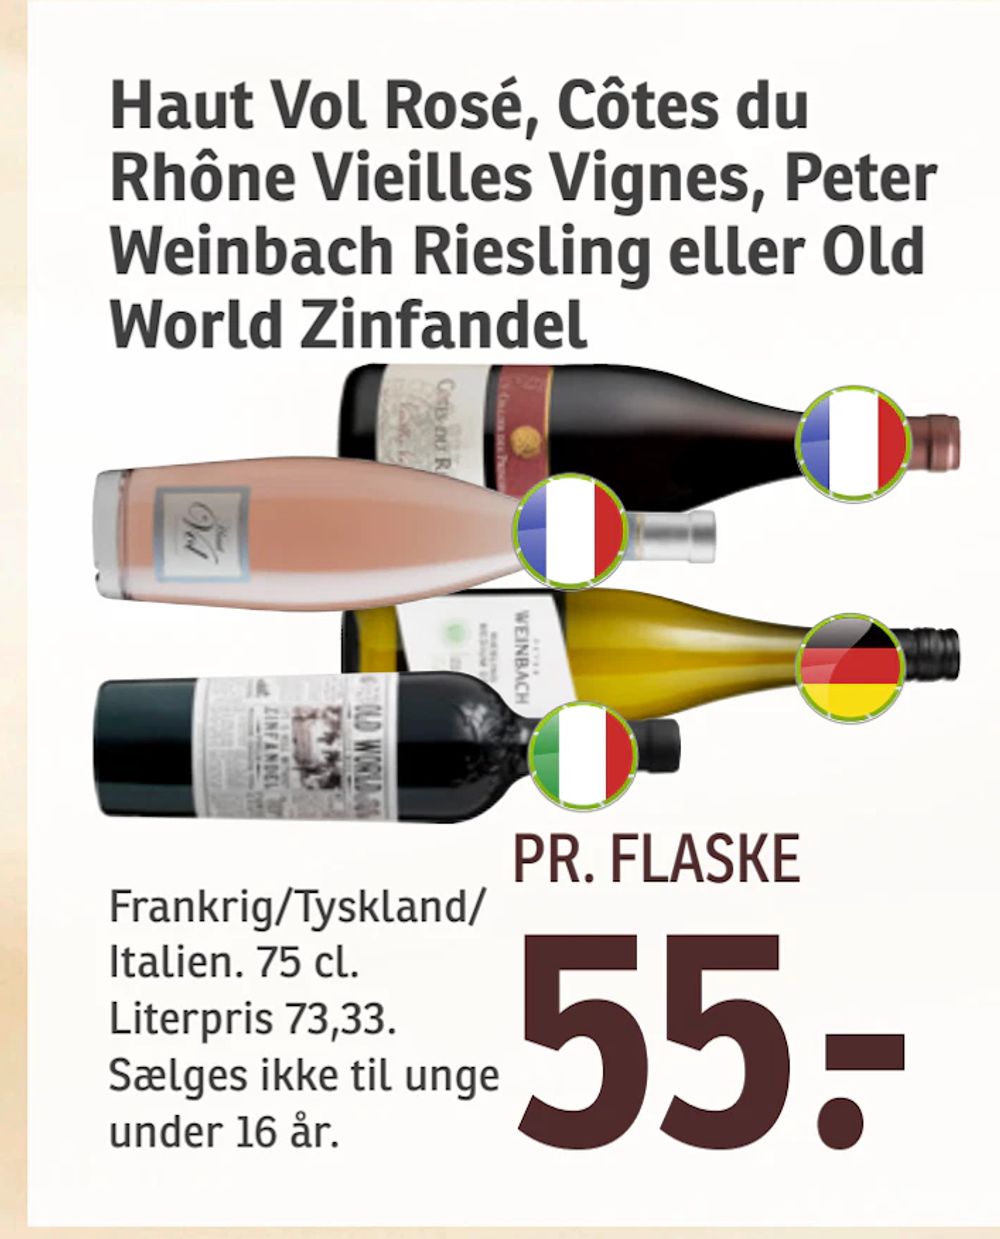 Tilbud på Haut Vol Rosé, Côtes du Rhône Vieilles Vignes, Peter Weinbach Riesling eller Old World Zinfandel fra SPAR til 55 kr.